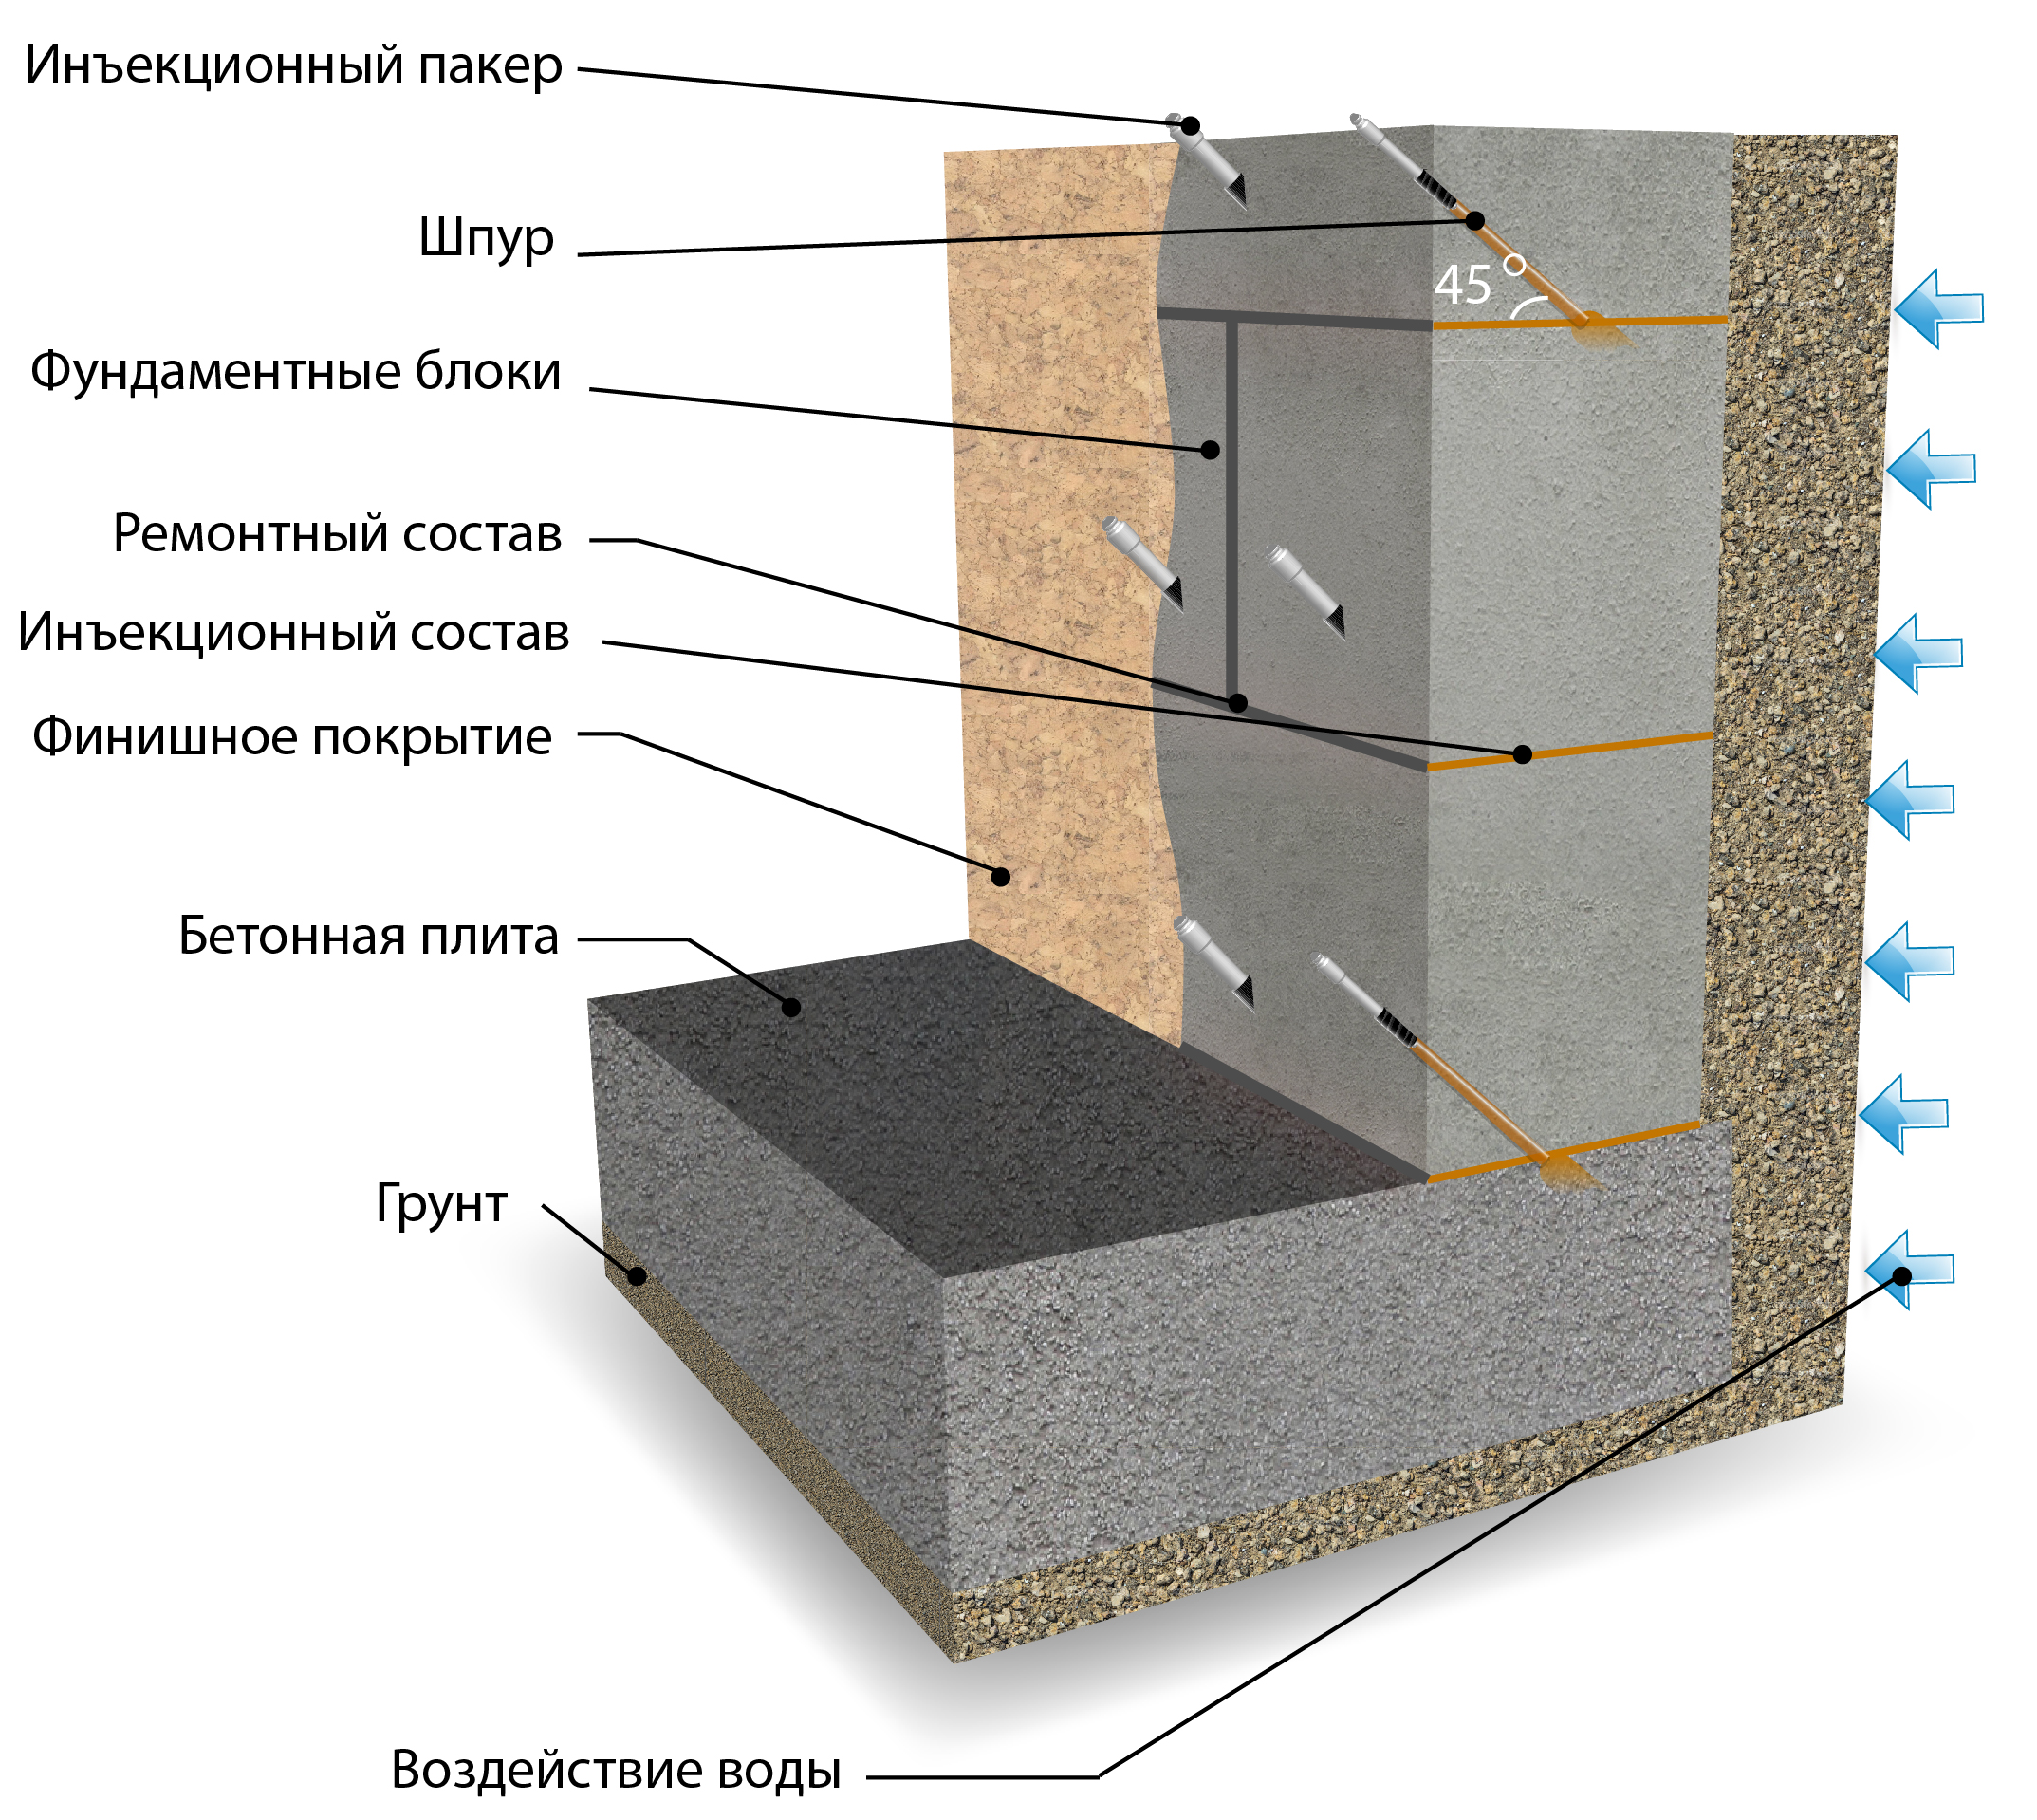 Схема работы инъекционной гидроизоляции на фундаментных и других блоках: